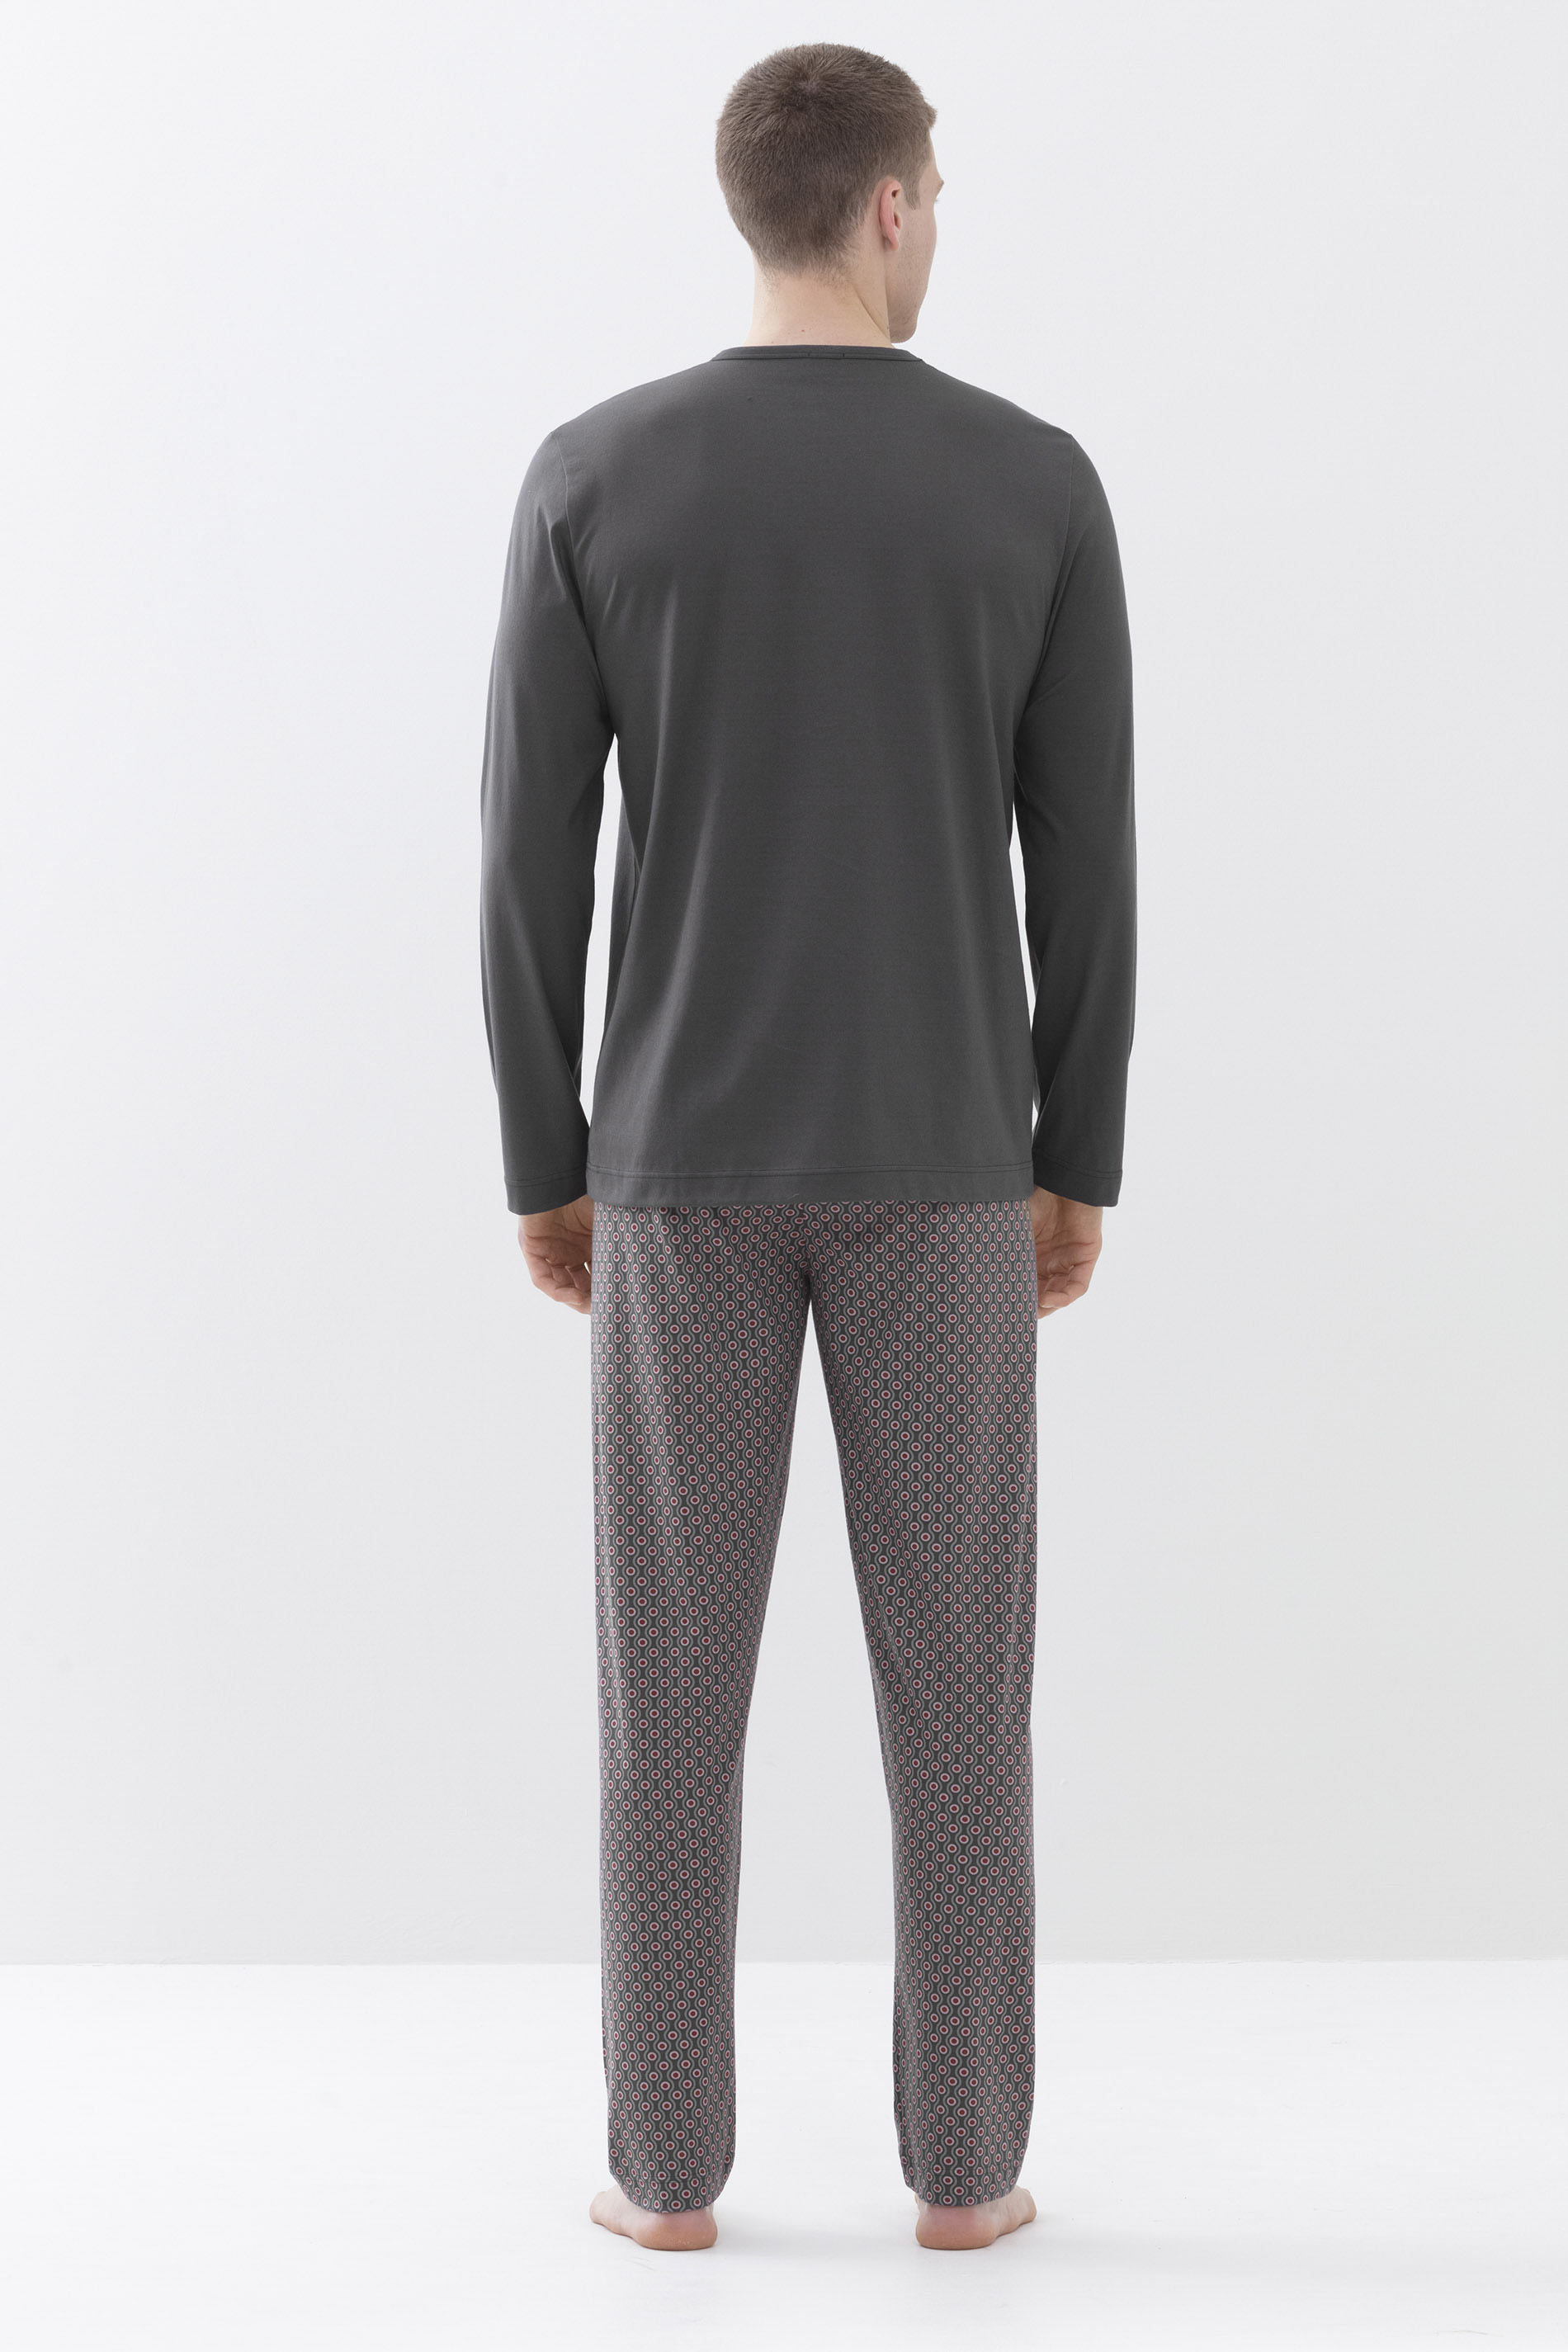 Pyjama Stormy Grey Serie 4 Col Dots Achteraanzicht | mey®